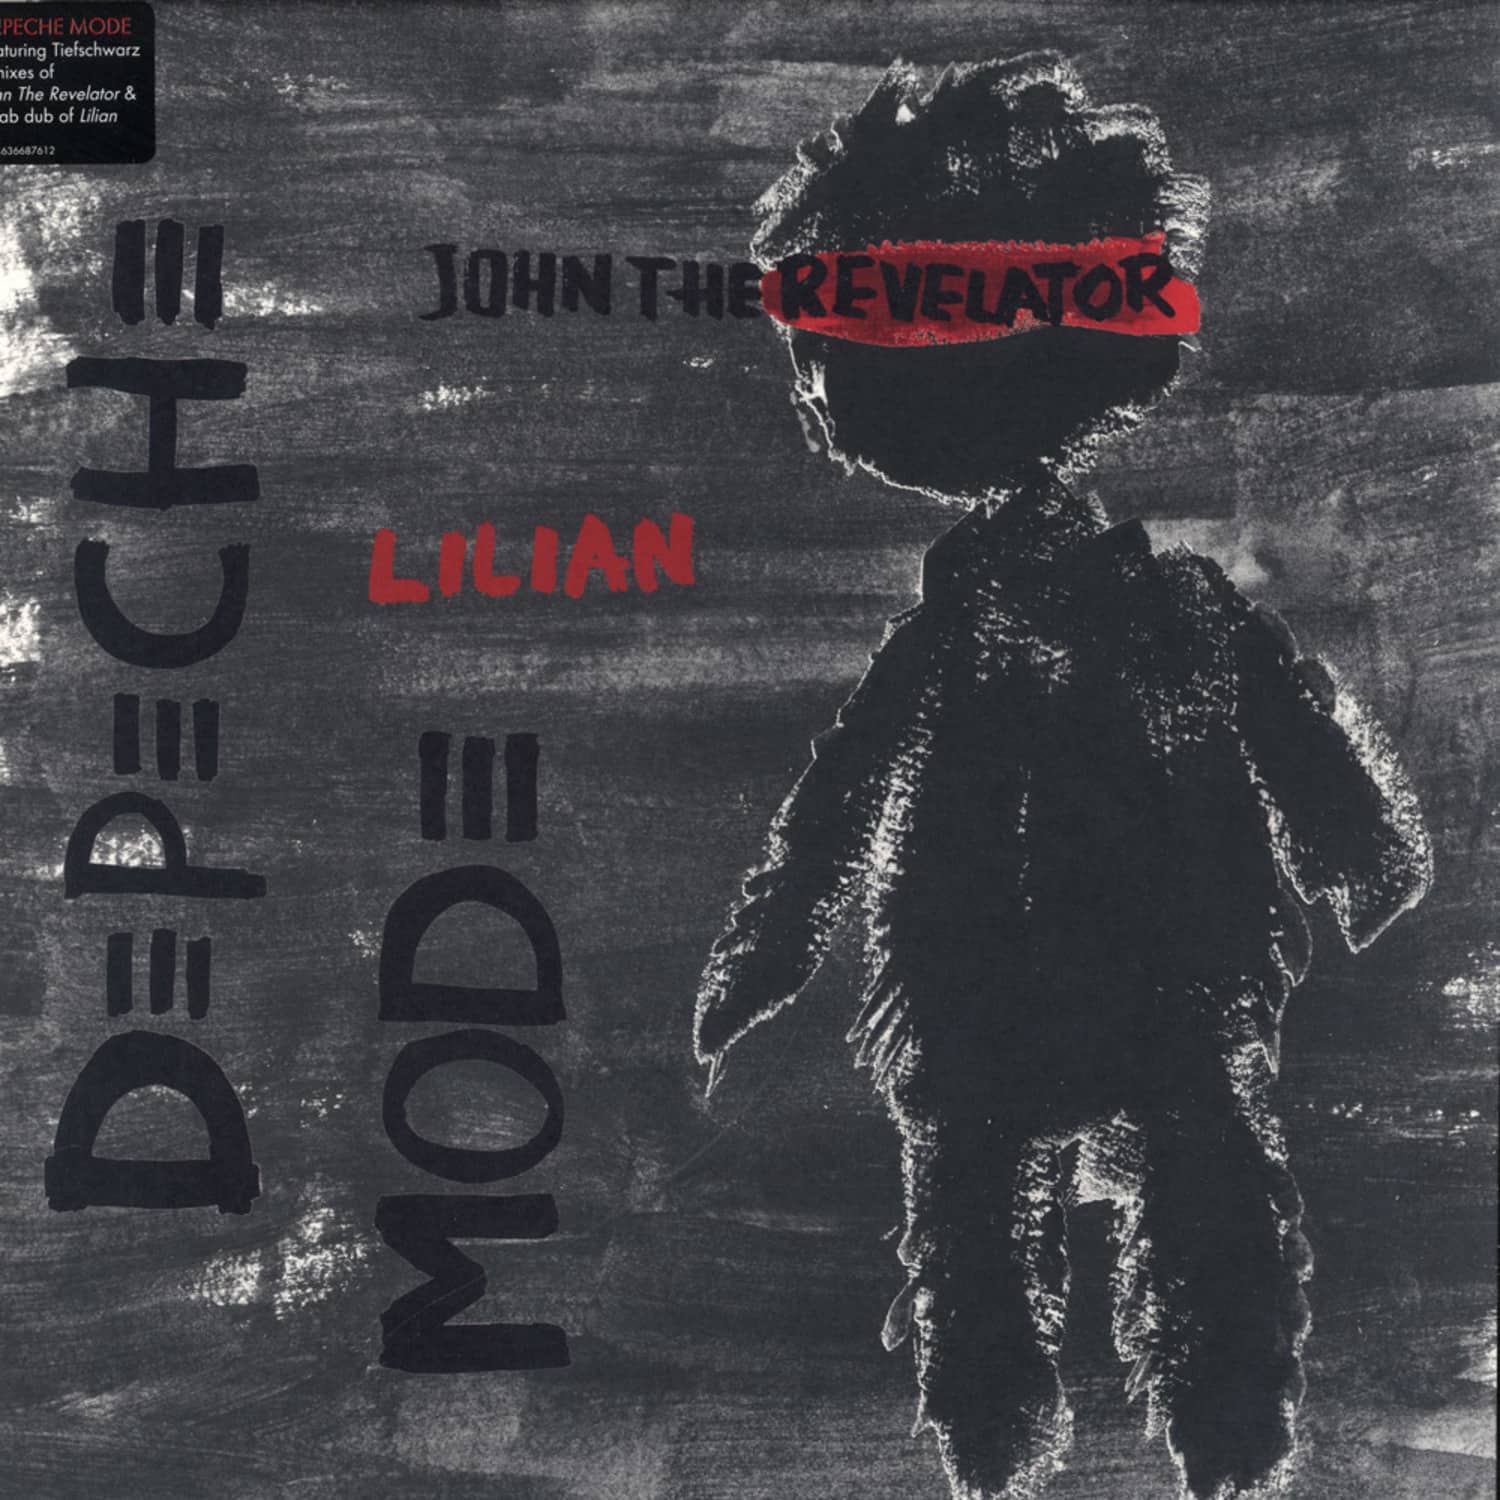 Depeche Mode - JOHN THE REVELATOR / LILIAN